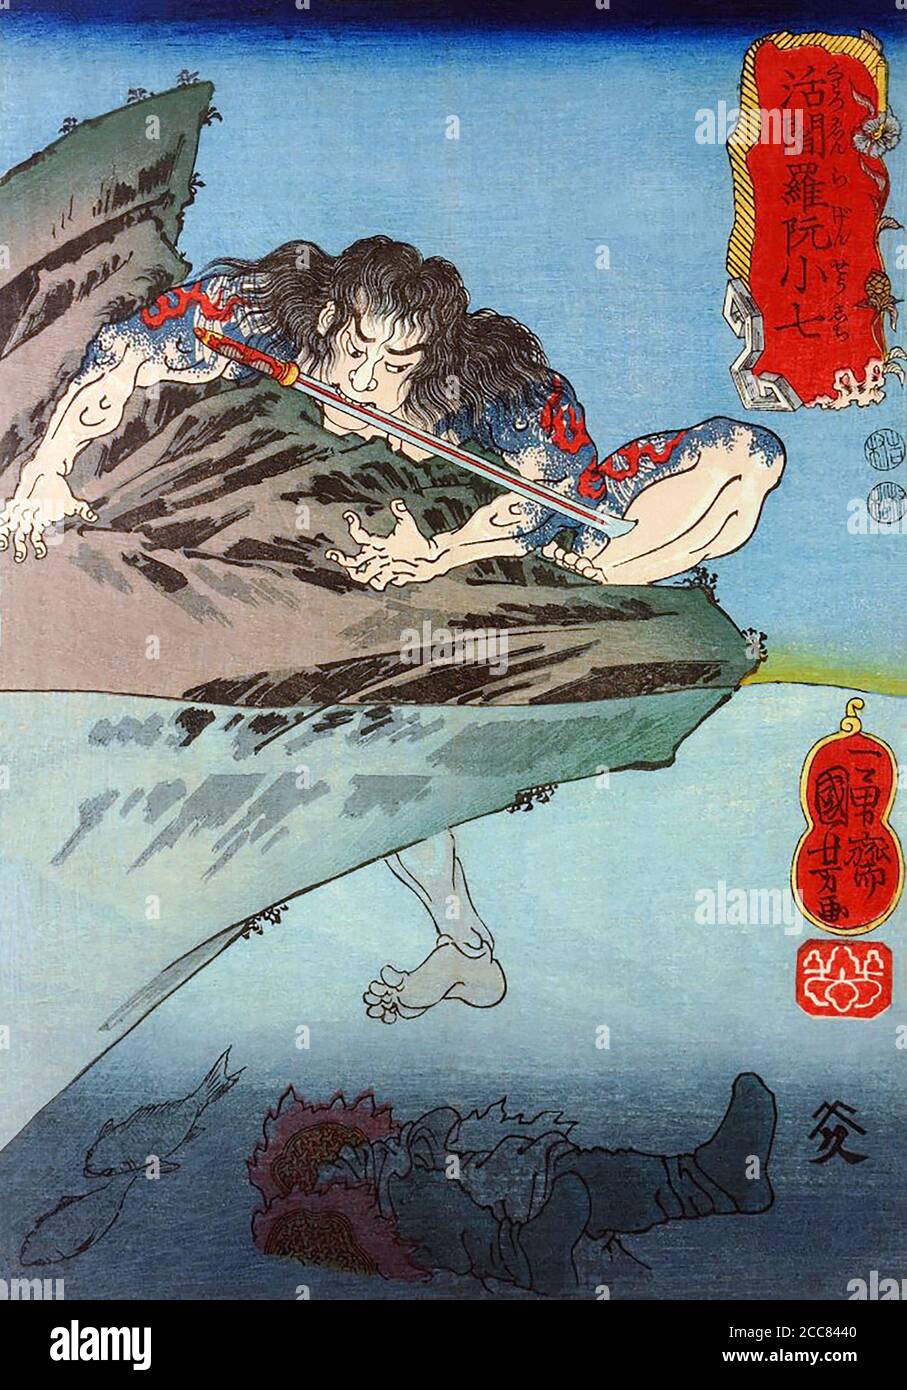 Japan: Lebender König Yama Ruan Xiaoqi oder Katsuenra Genshoshichi, einer der 'einhundertachtundhundert Helden des Wasserrandes', klettert aus dem Wasser auf einen Felsen, sein Schwert zwischen den Zähnen, und lässt seinen Feind unter Wasser. Holzschnitt von Utagawa Kuniyoshi (1797-1863), 1827-1830. Der Wasserrand (im Chinesischen als Shuihu Zhuan bekannt, manchmal abgekürzt zu Shuihu, im Japanischen als Suikoden bekannt, sowie Outlaws des Marschs, Tale of the Marshes, All Men are Brothers, Men of the Marshes, Oder die Sümpfe des Mount Liang in Englisch, ist ein Roman aus dem 14. Jahrhundert und einer der vier Großen Klassischen N Stockfoto